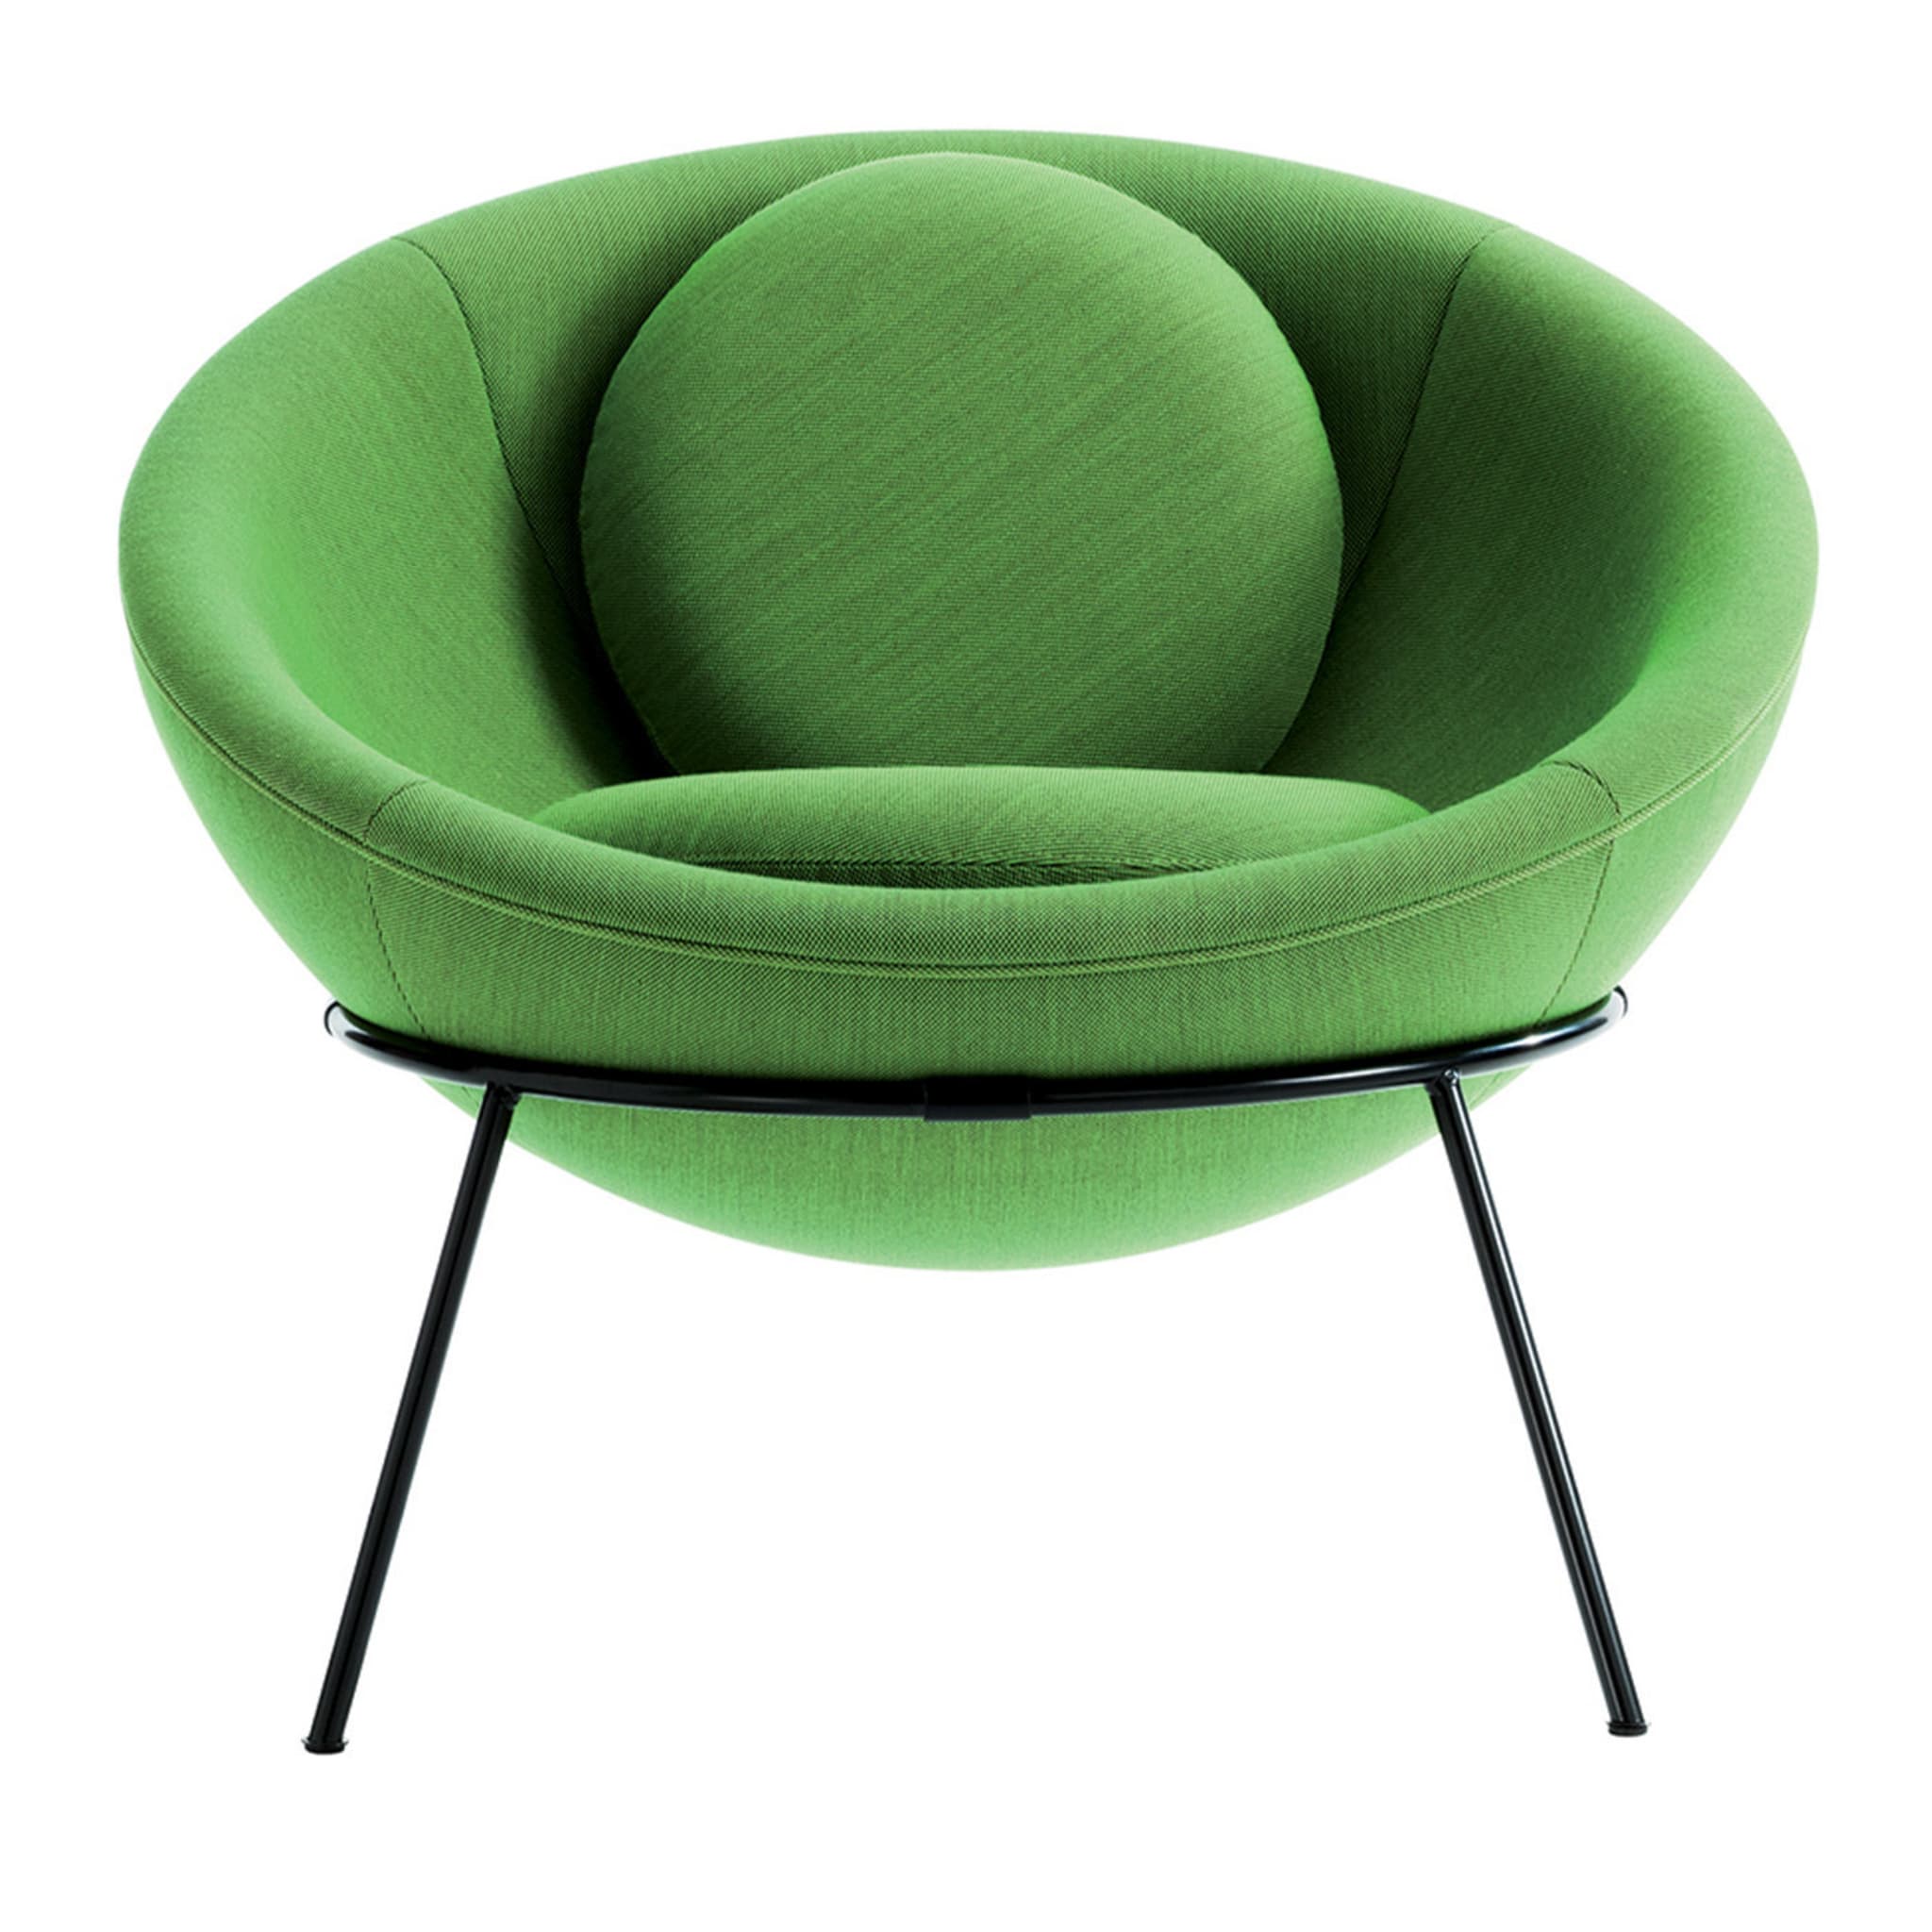 Голодный стул. Кресло зеленое. Стул кресло зеленый. Green Chair.